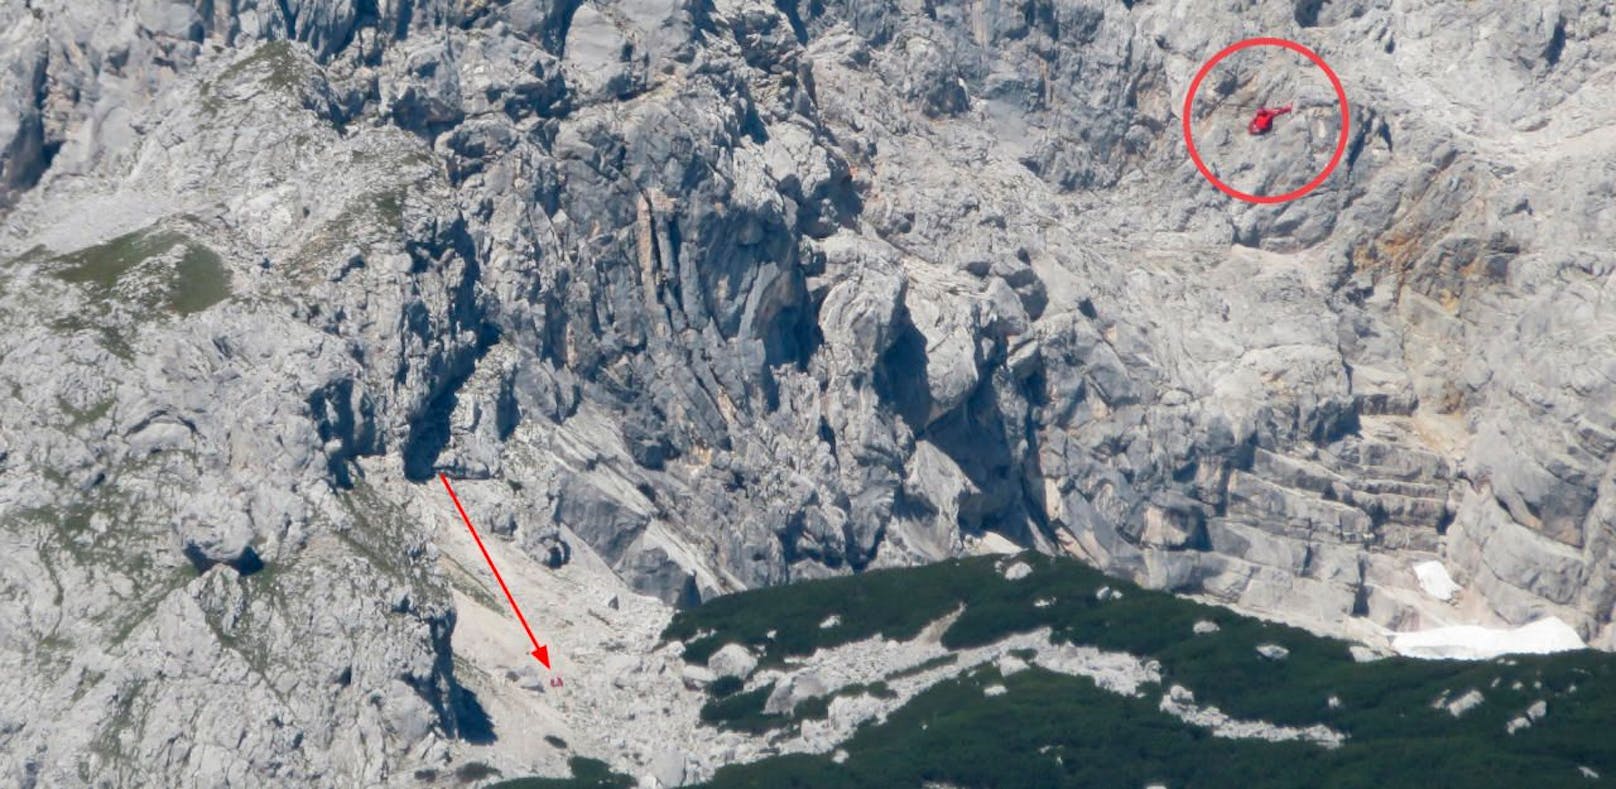 Kletterin (23) stürzt am Großen Priel 200 Meter ab